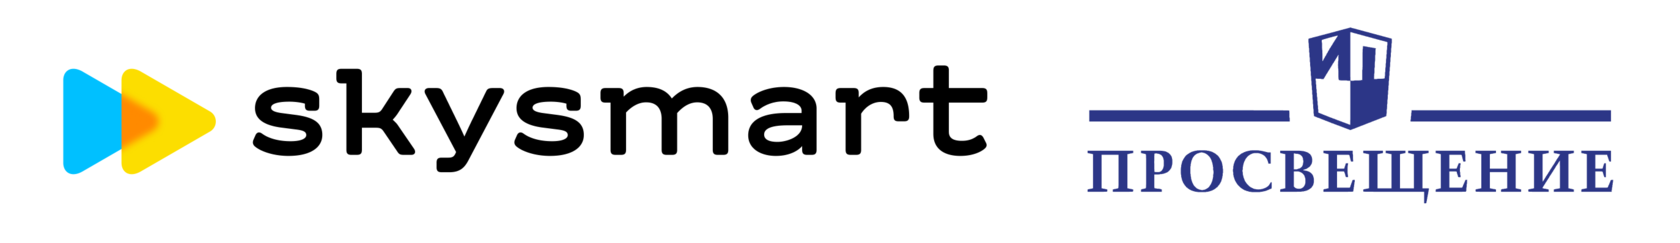 Https es edu. SKYSMART. SKYSMART лого. Интерактивная тетрадь Sky Smart. Интерактивная рабочая тетрадь SKYSMART.